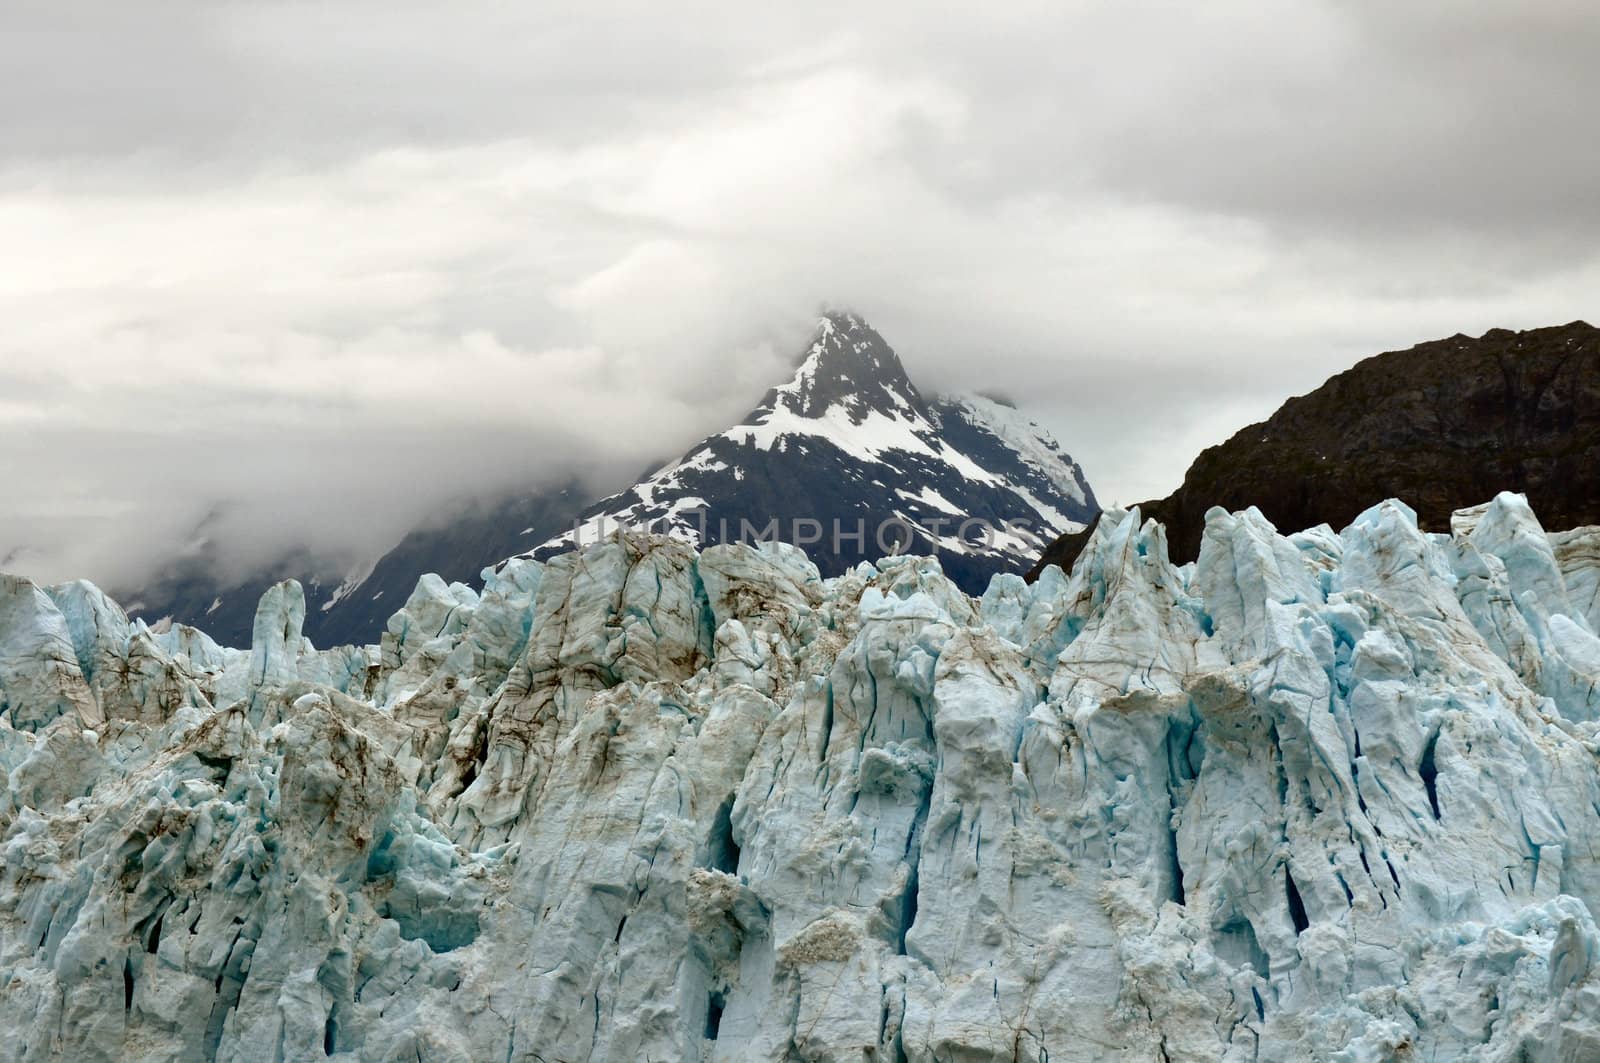 Alaskan Glaciers by RefocusPhoto